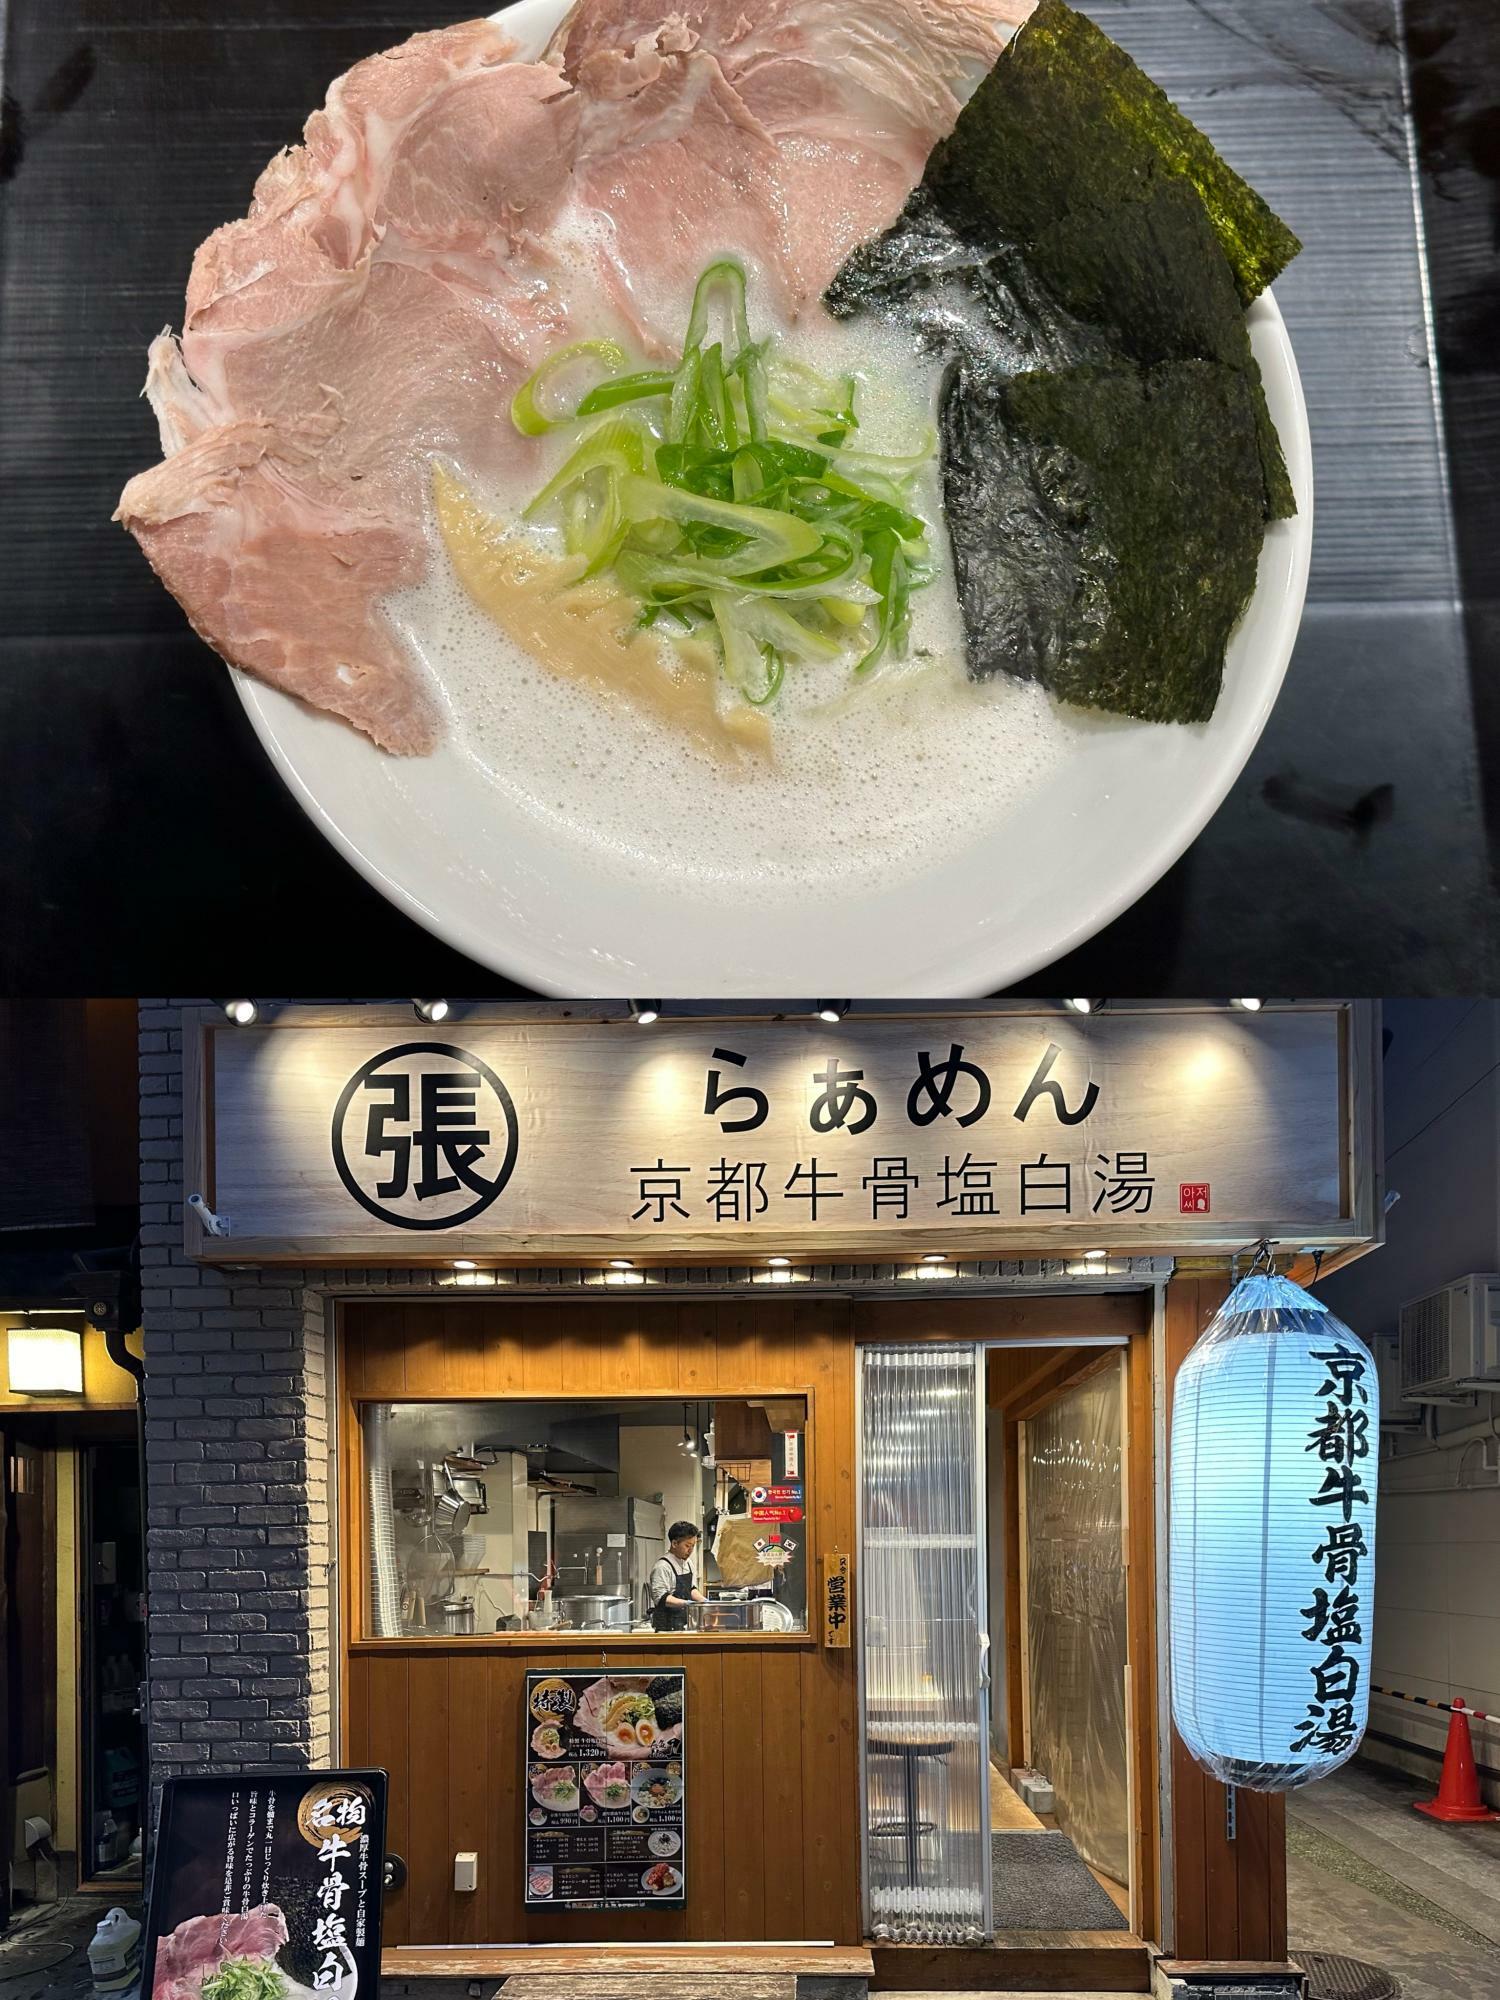 マイルドでなめらかな牛骨スープが楽しめる『京都牛骨塩白湯 ハリちゃん』。